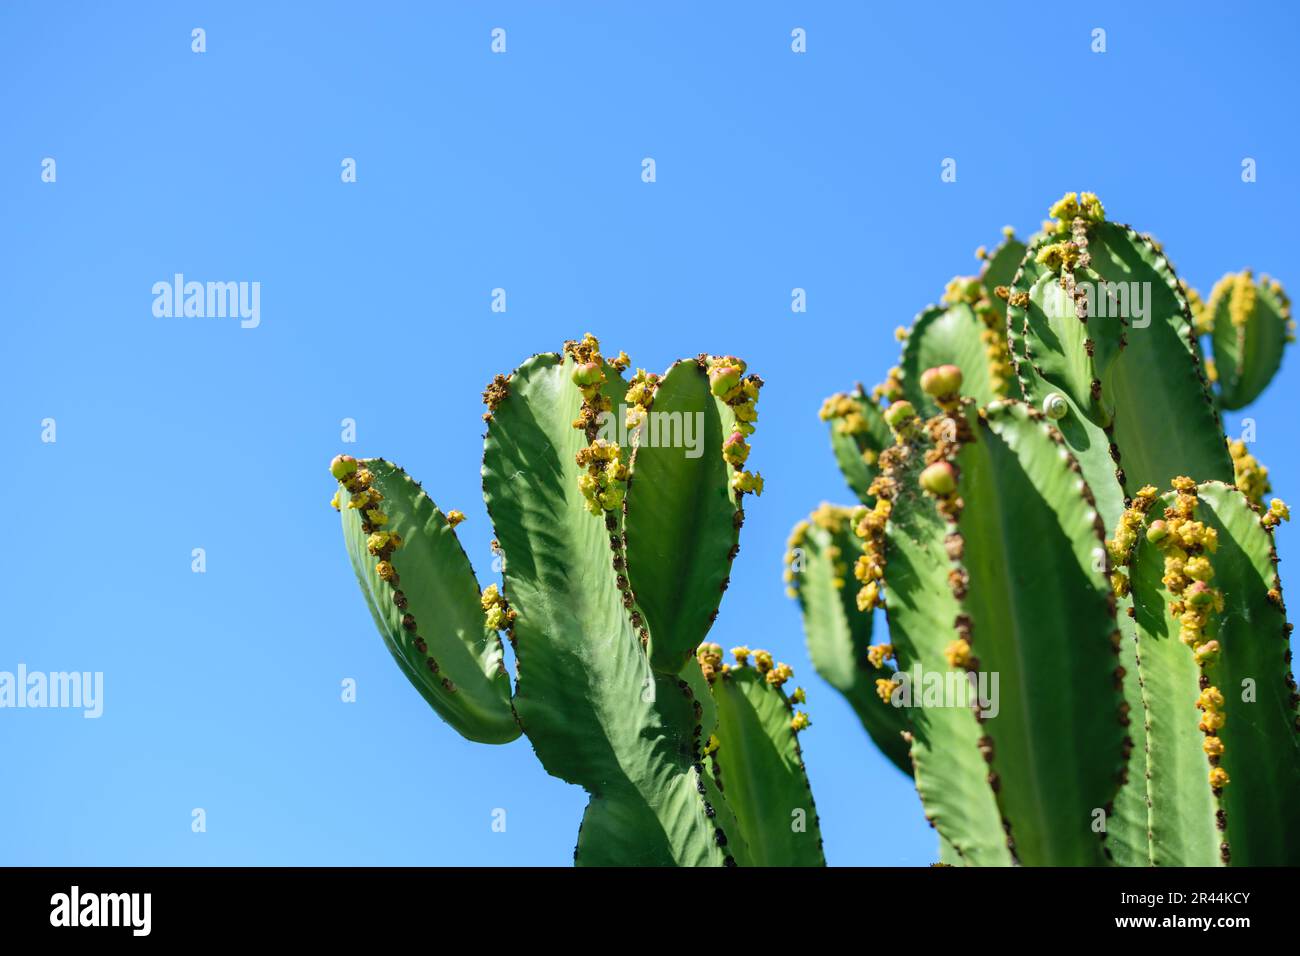 Bild von Kaktuspflanzen in gutem Wachstum mit blauem, klarem Himmelshintergrund Stockfoto